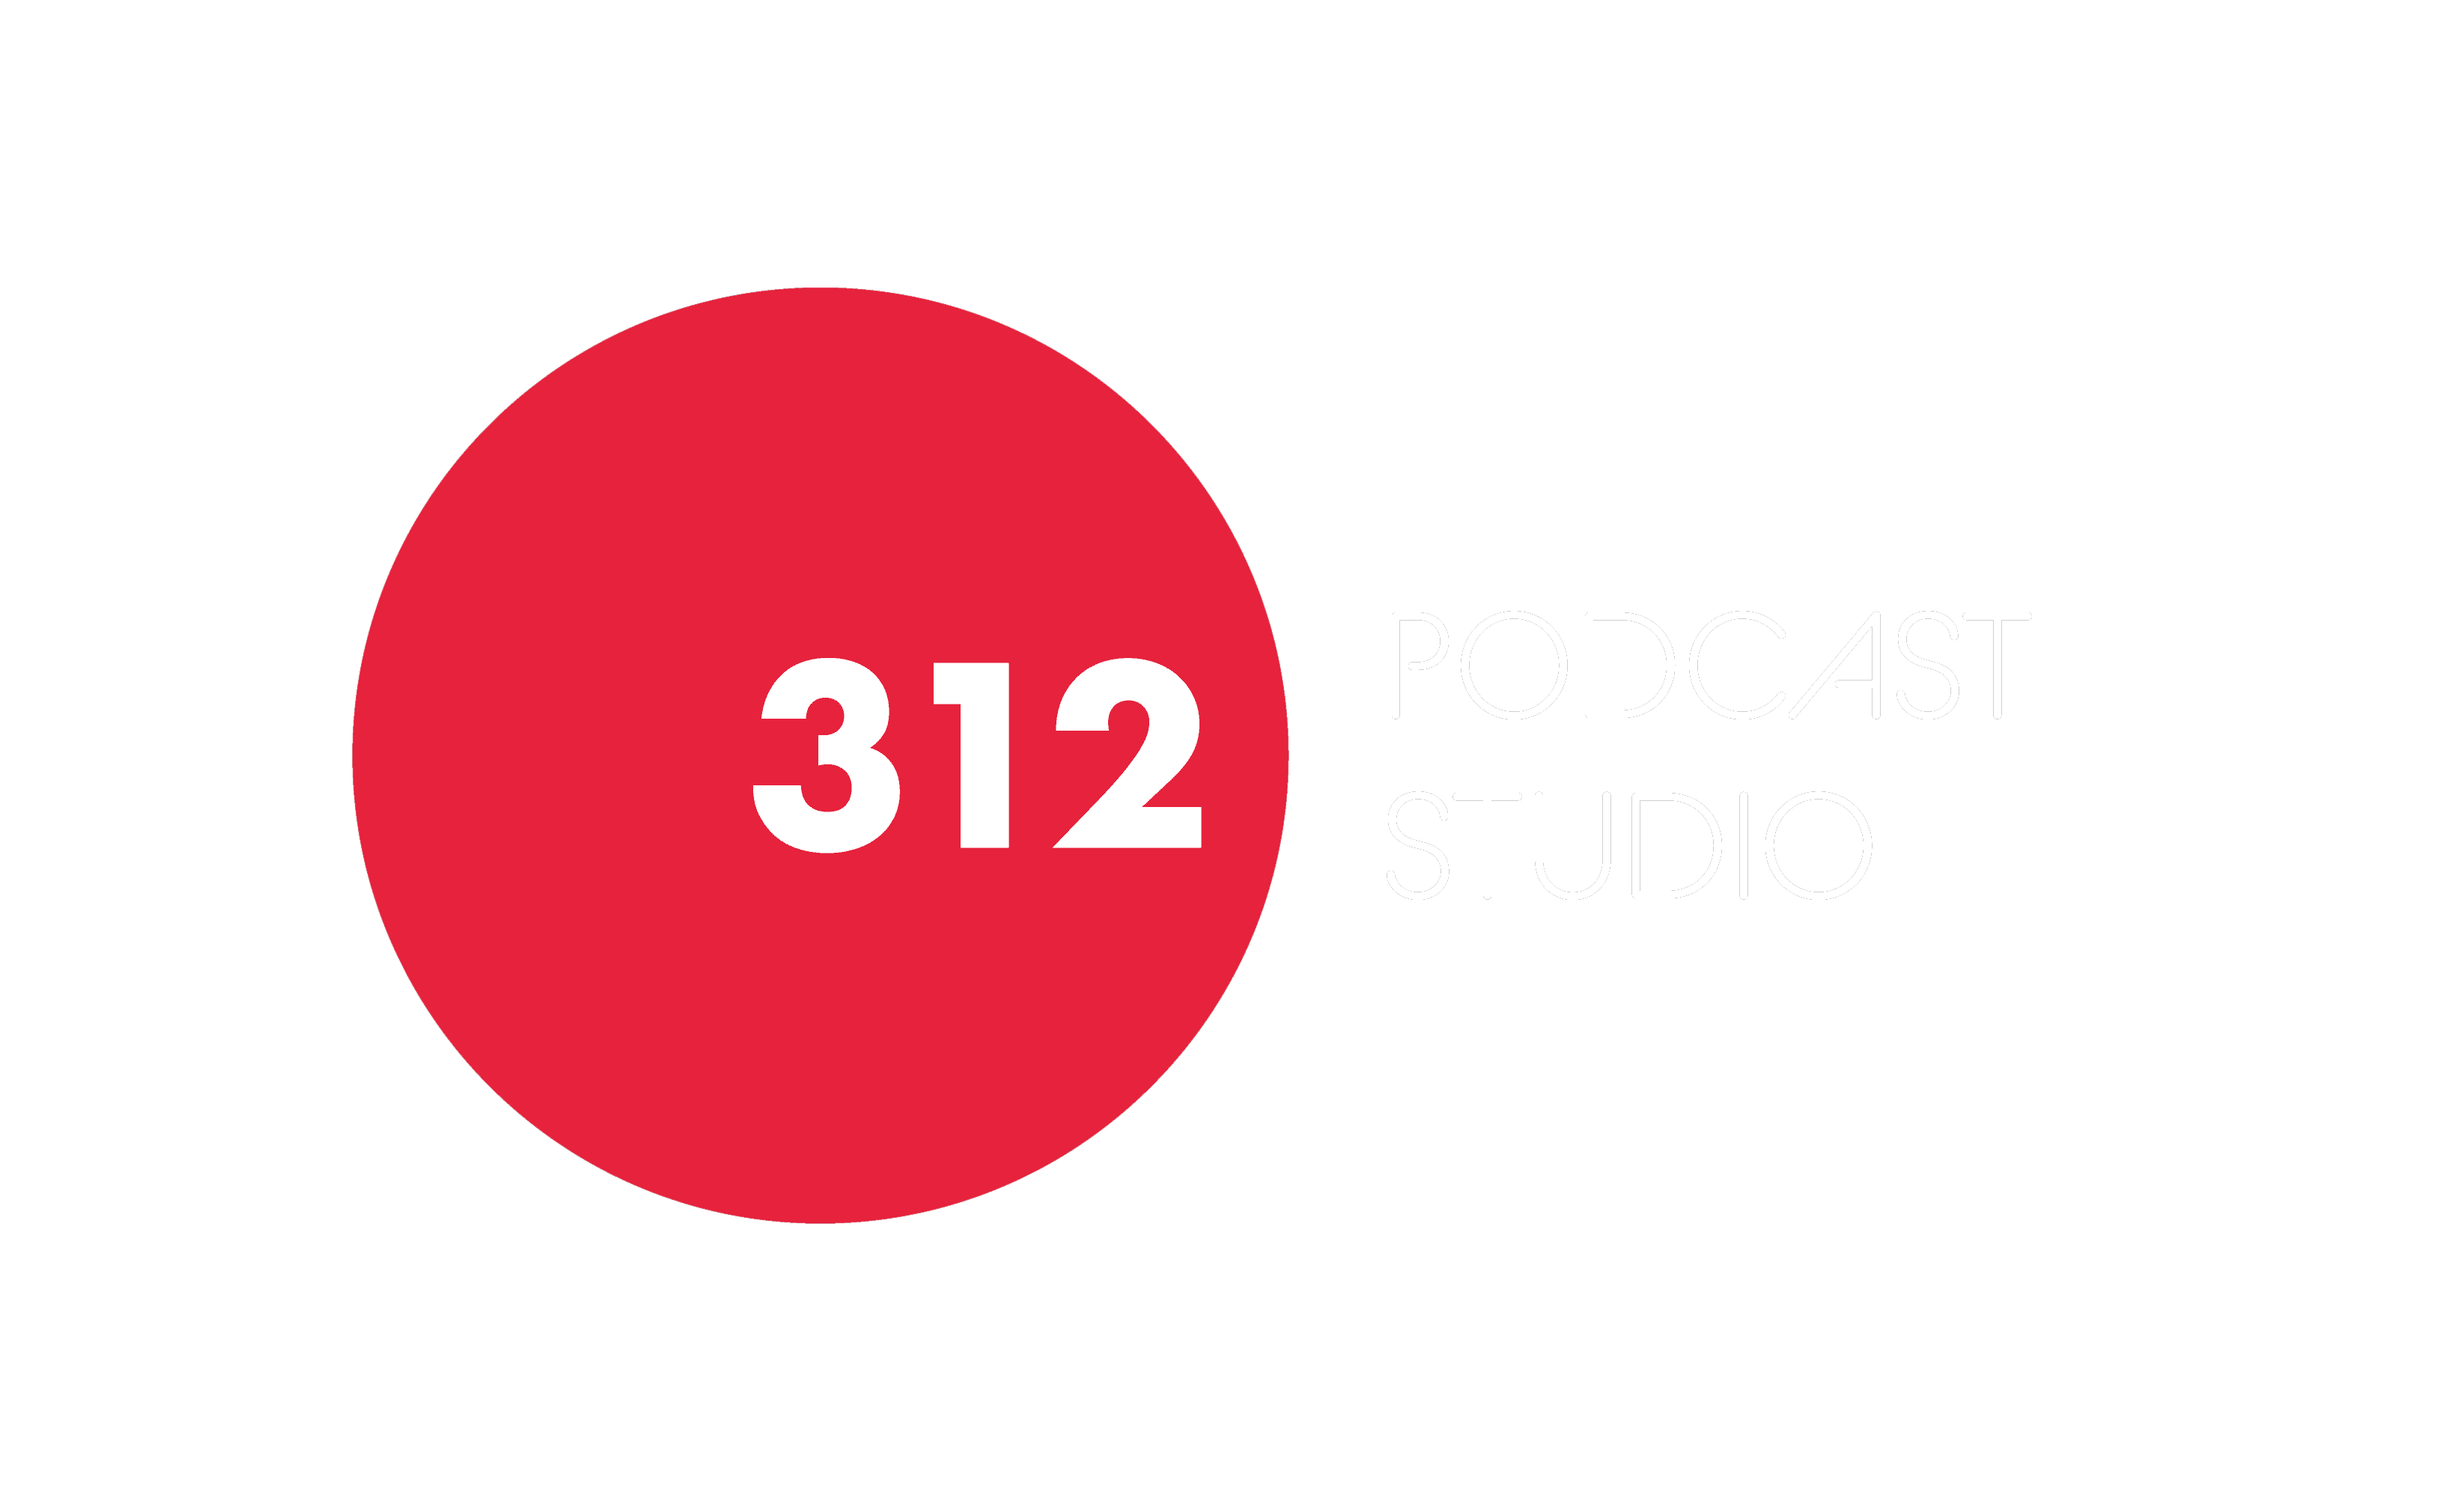 Studio 312 - studio podcastowe